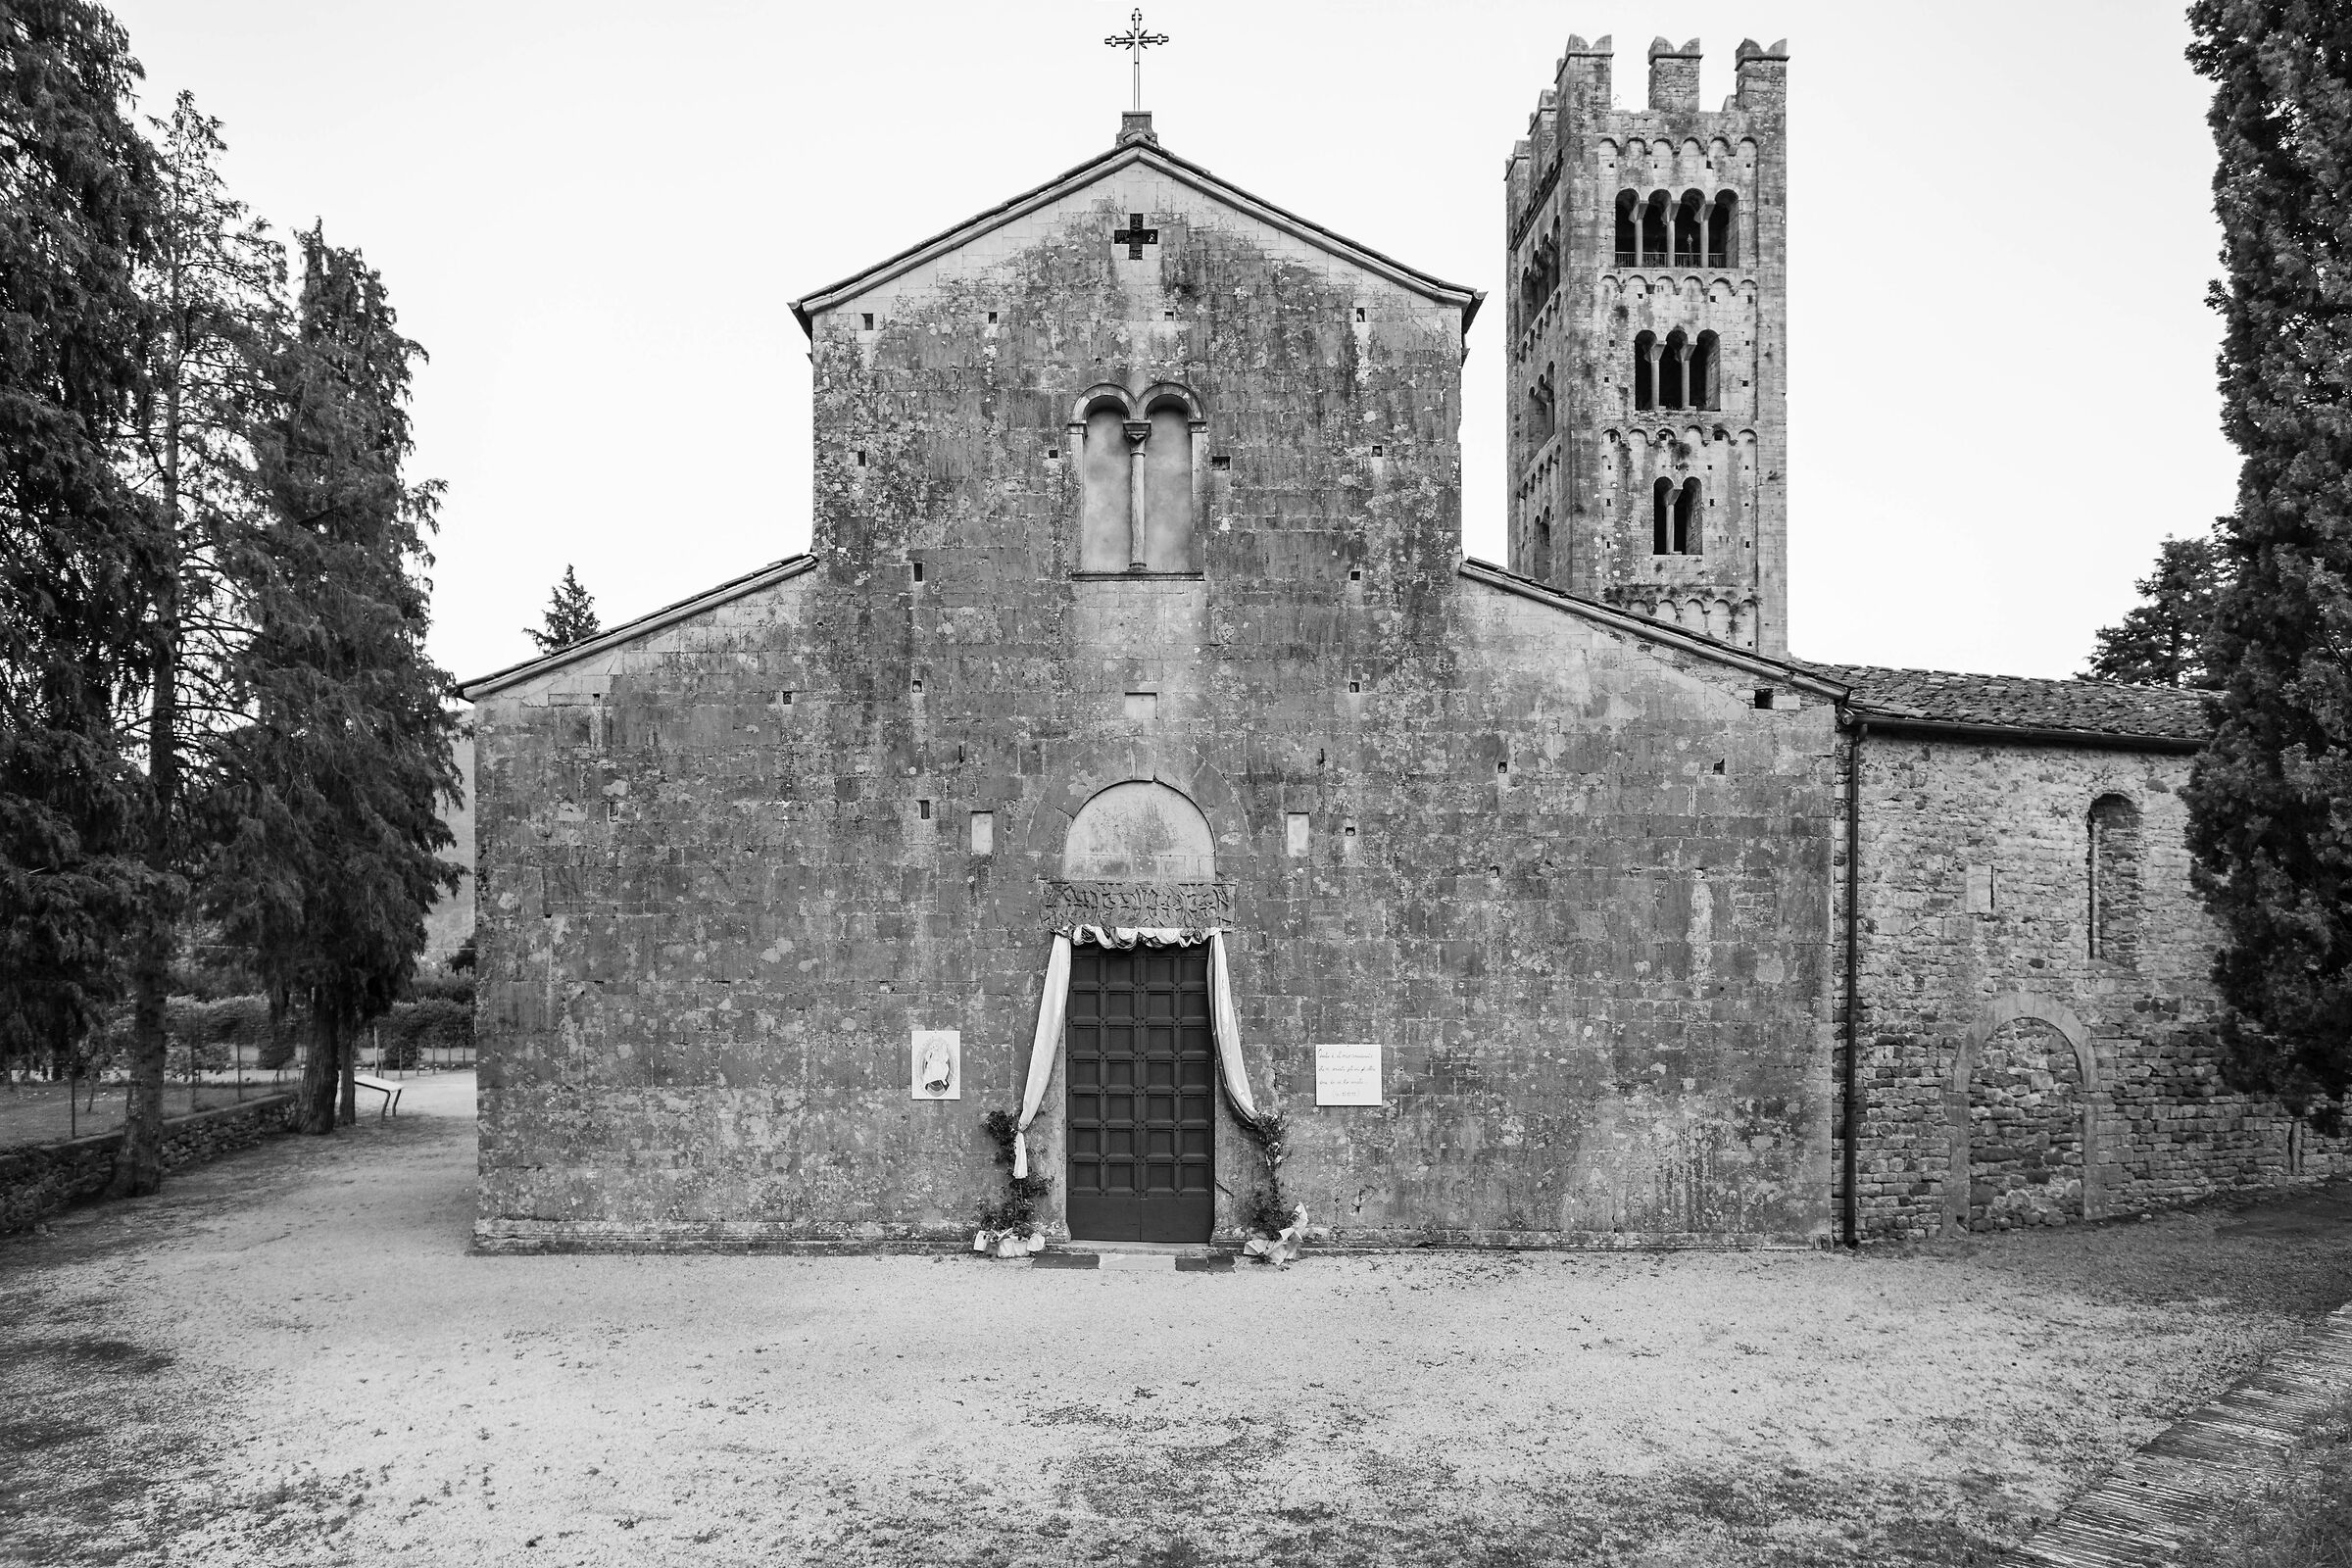 Pieve S. Maria Assunta, Diecimo, Lucca...